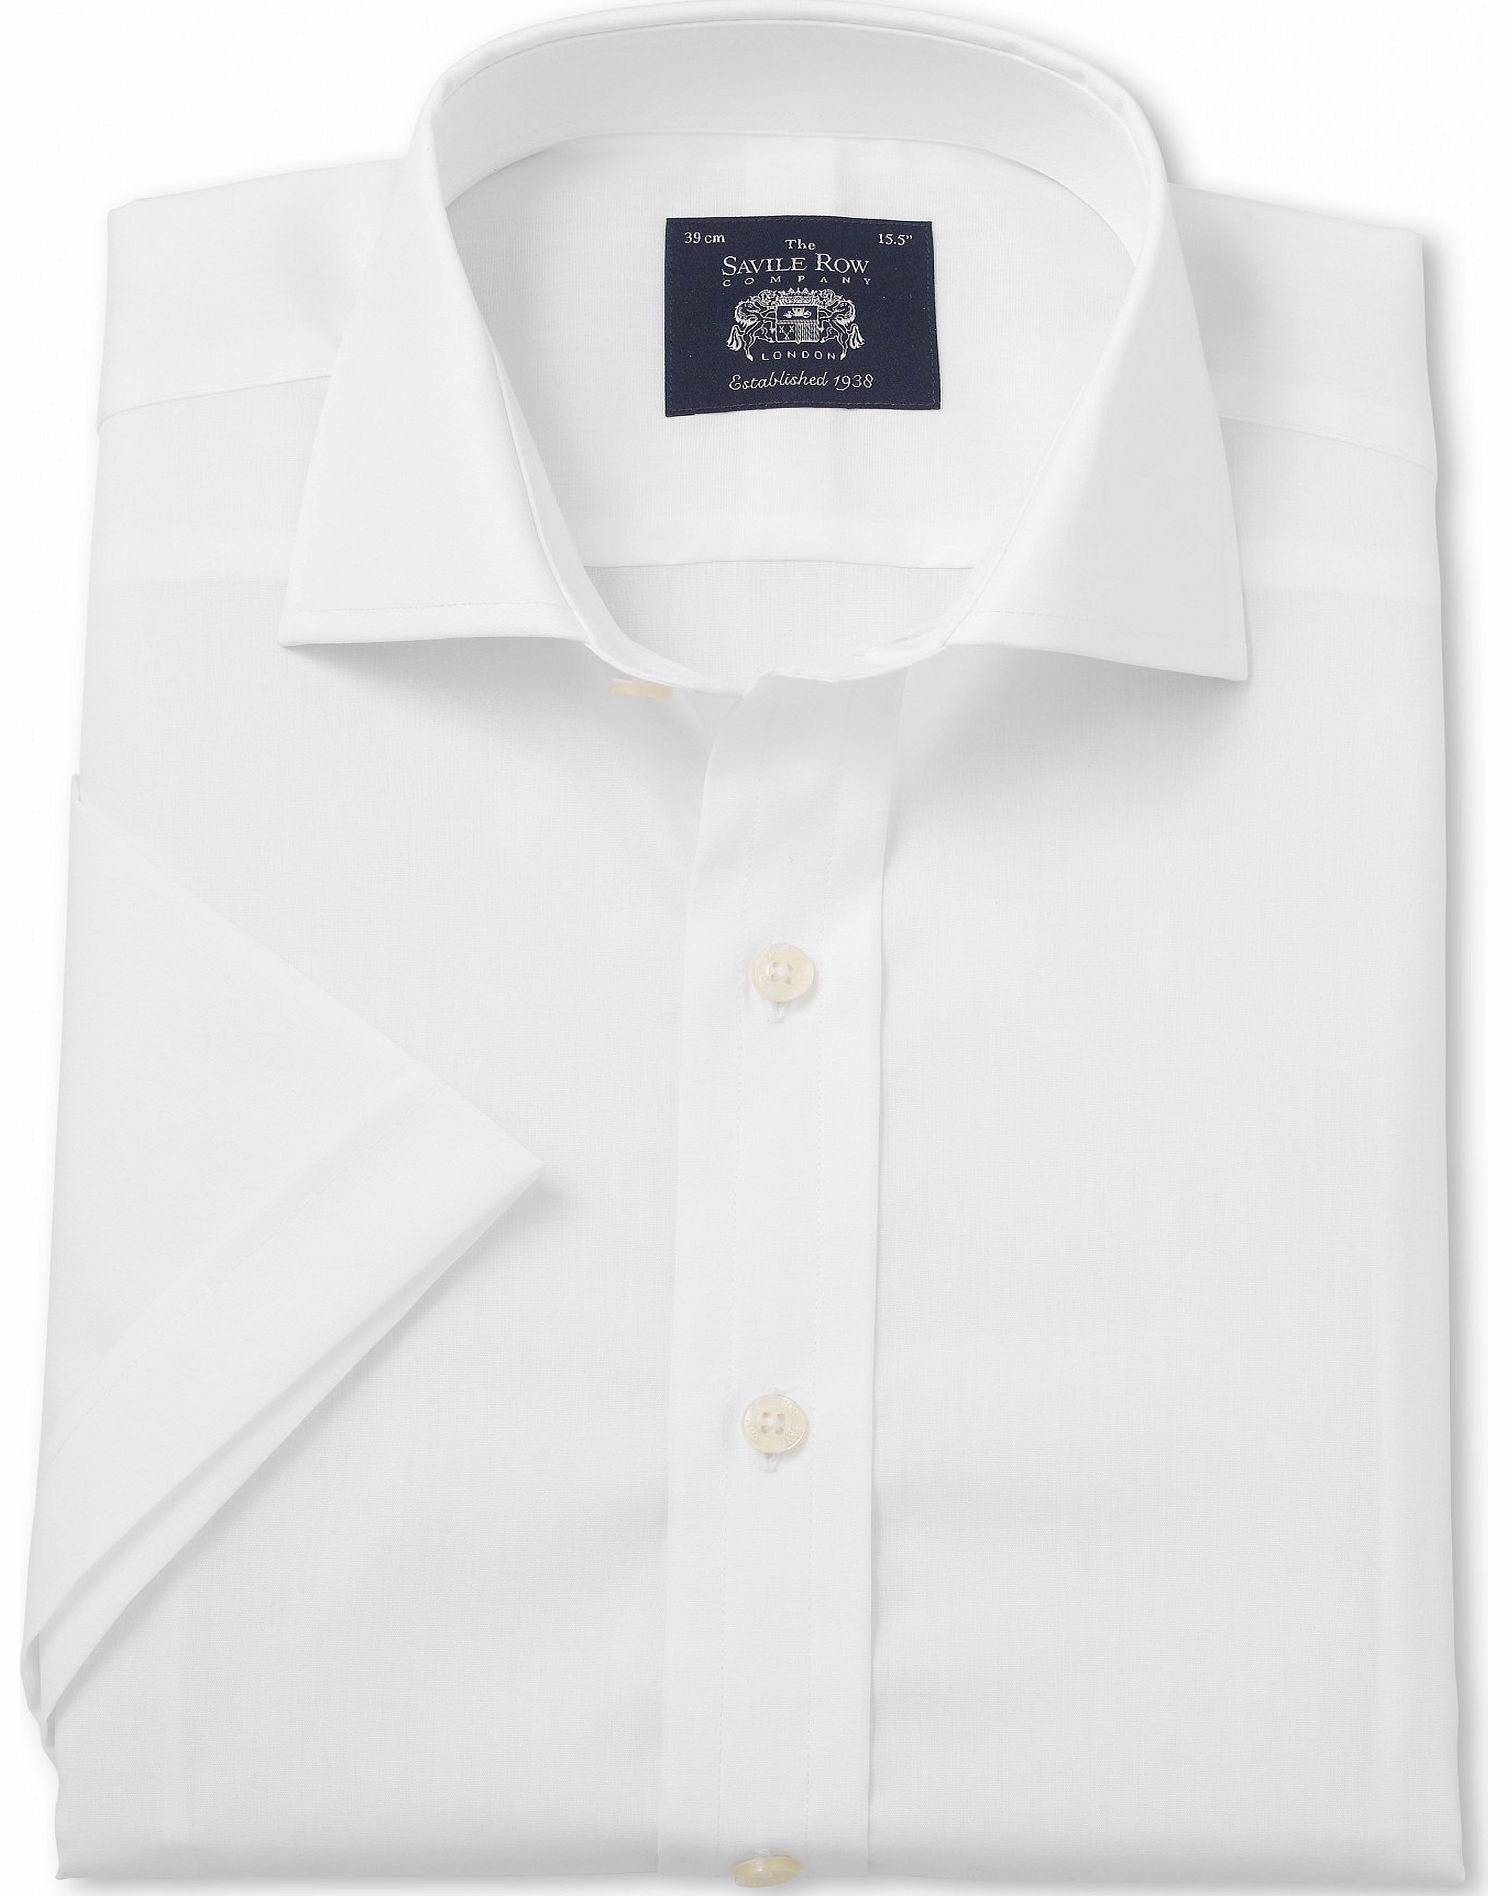 Savile Row Company White Slim Fit Short Sleeve Shirt 16 1/2`` Short